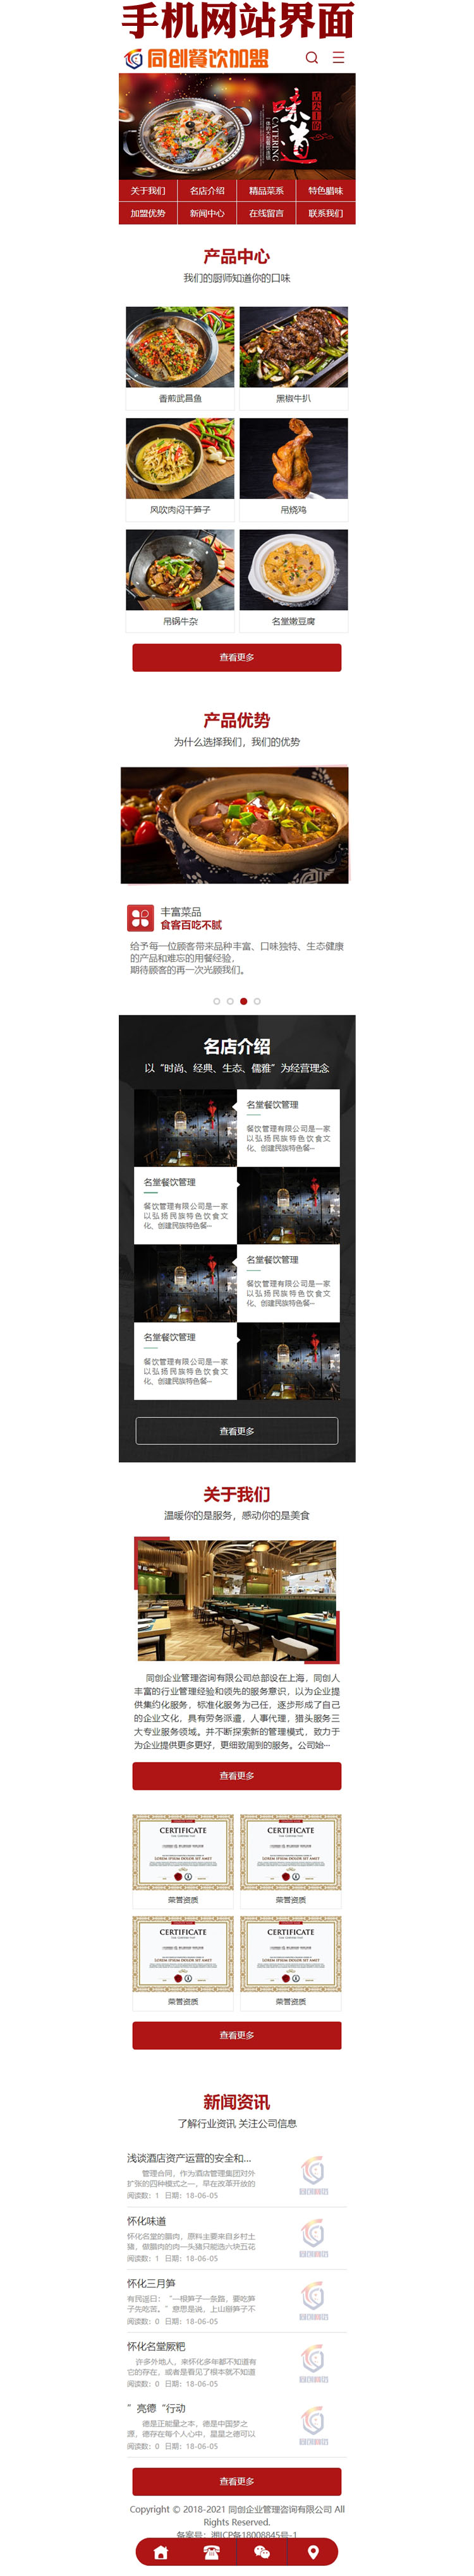 大型餐饮连锁管理网站源码程序-BY071-3